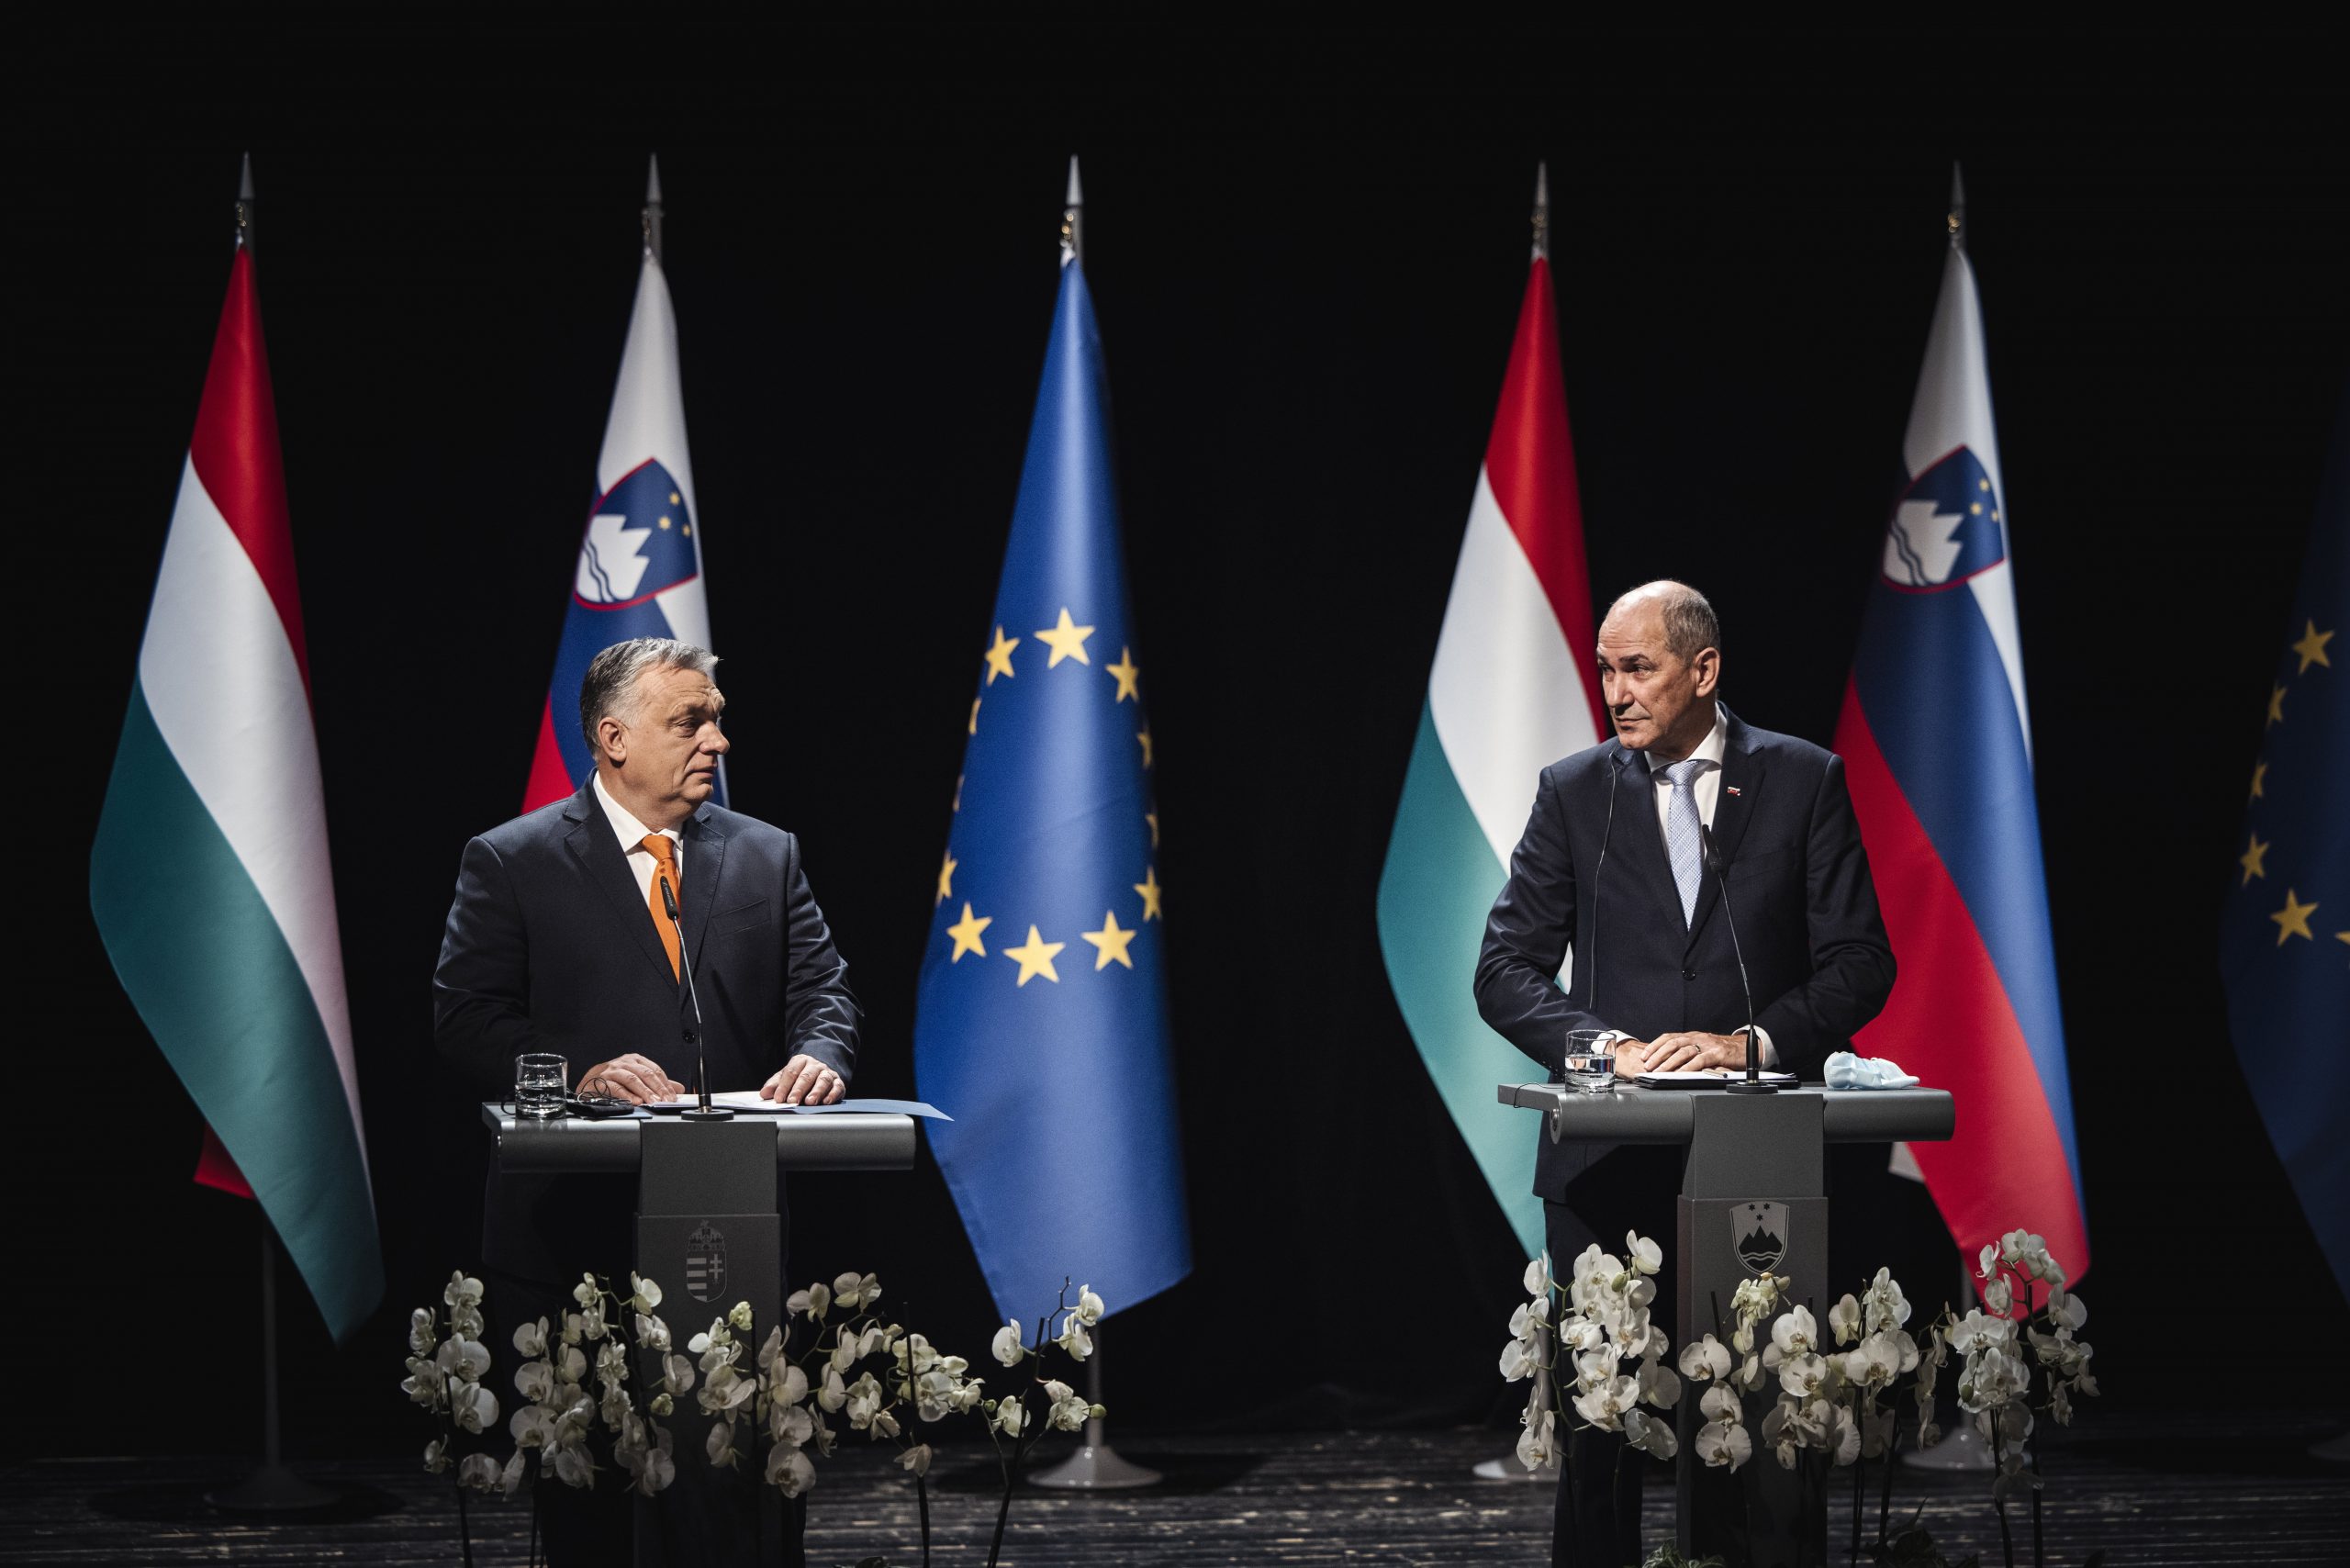 Jhansi: Madžarsko-slovenski sporazum omogoča bolj celovito sodelovanje